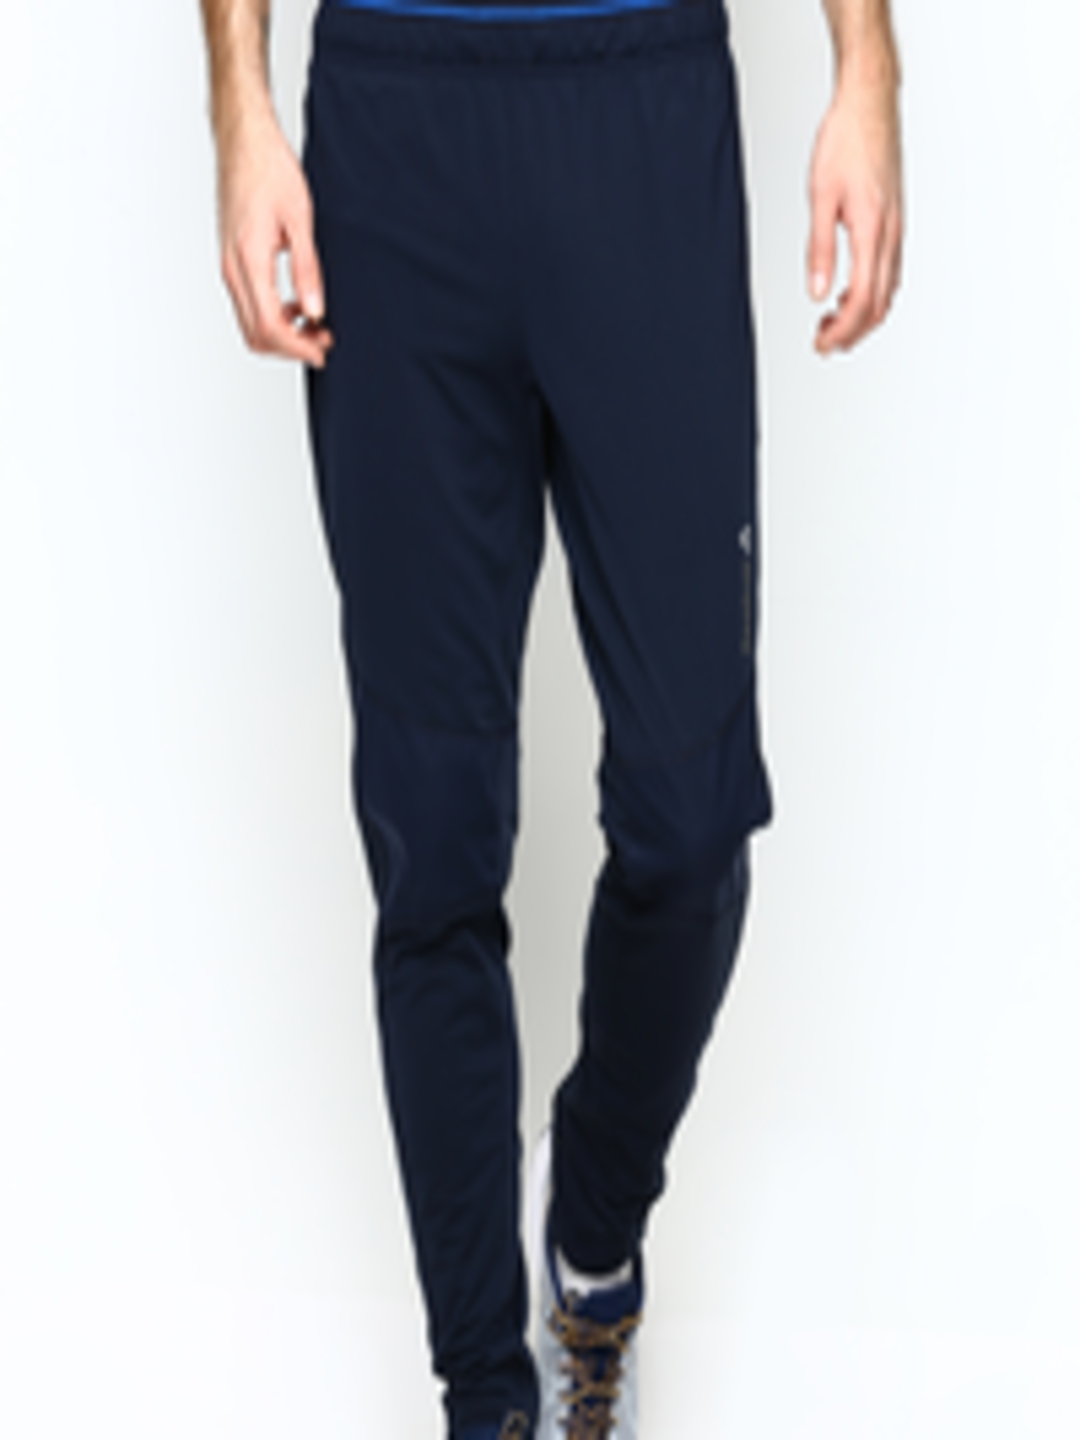 Buy Reebok Men Navy Slim Fit DT Thermal Pant Training Track Pants ...